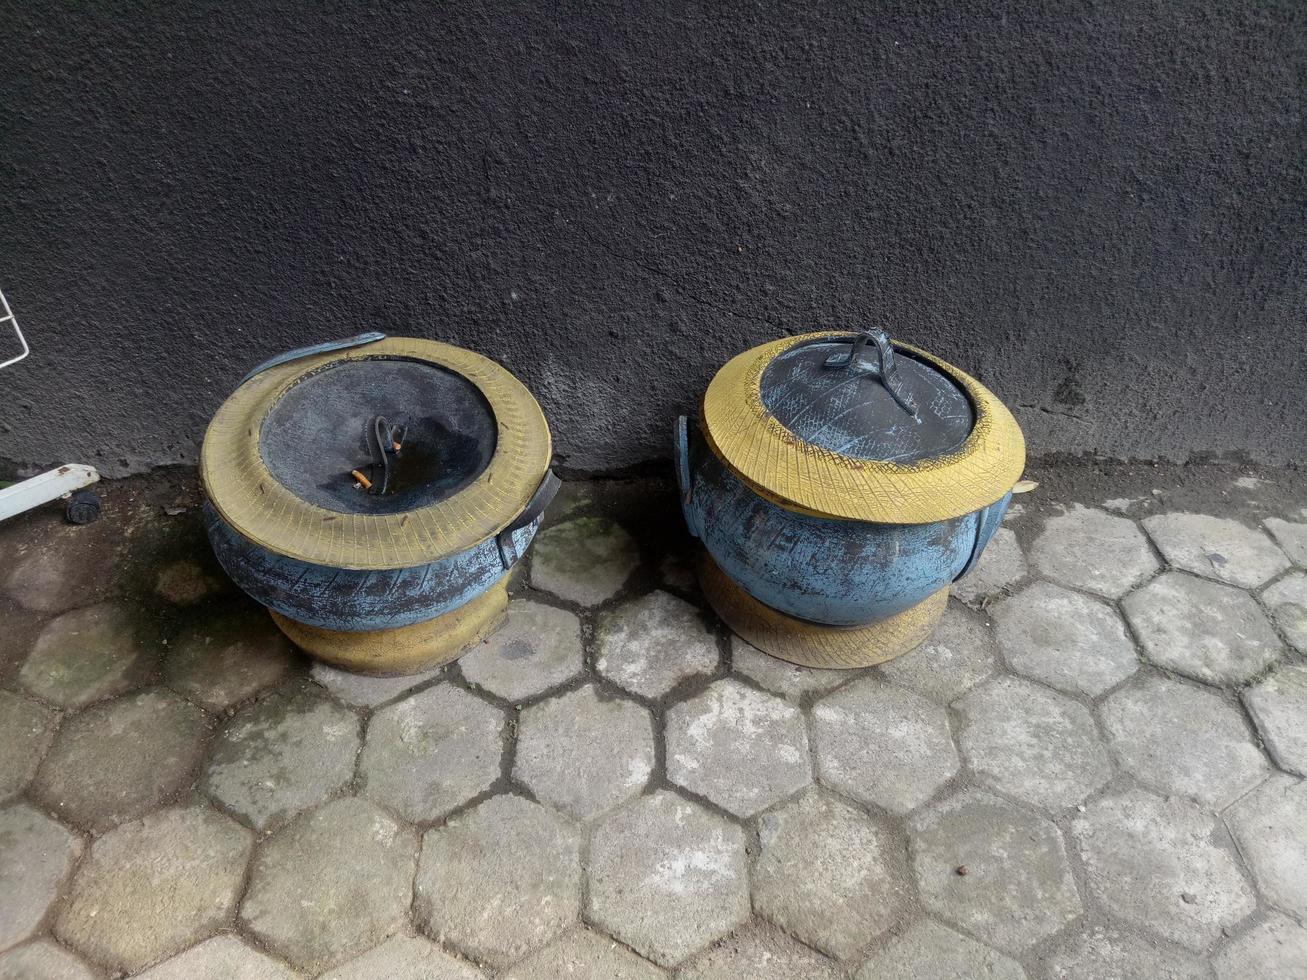 deux poubelles fabriquées à partir de vieux pneus en caoutchouc photo